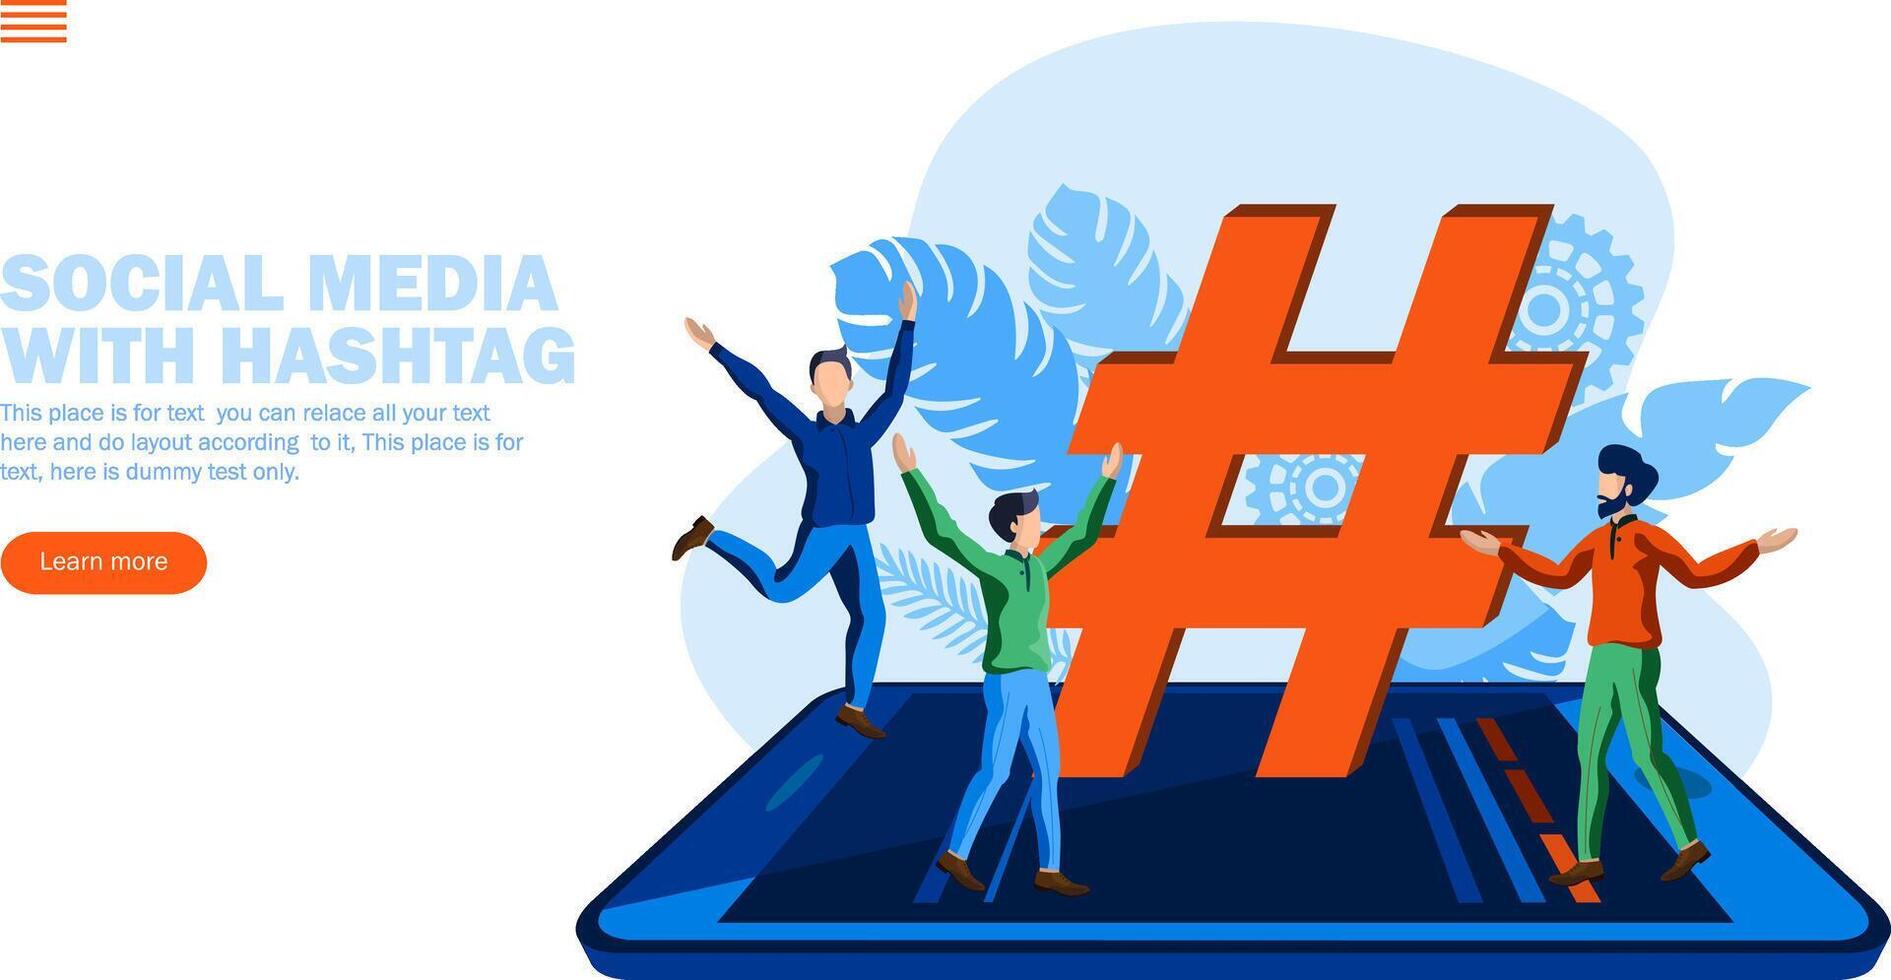 människor njuter runt om hashtag och social media ikoner på mobil begrepp vektor illustration